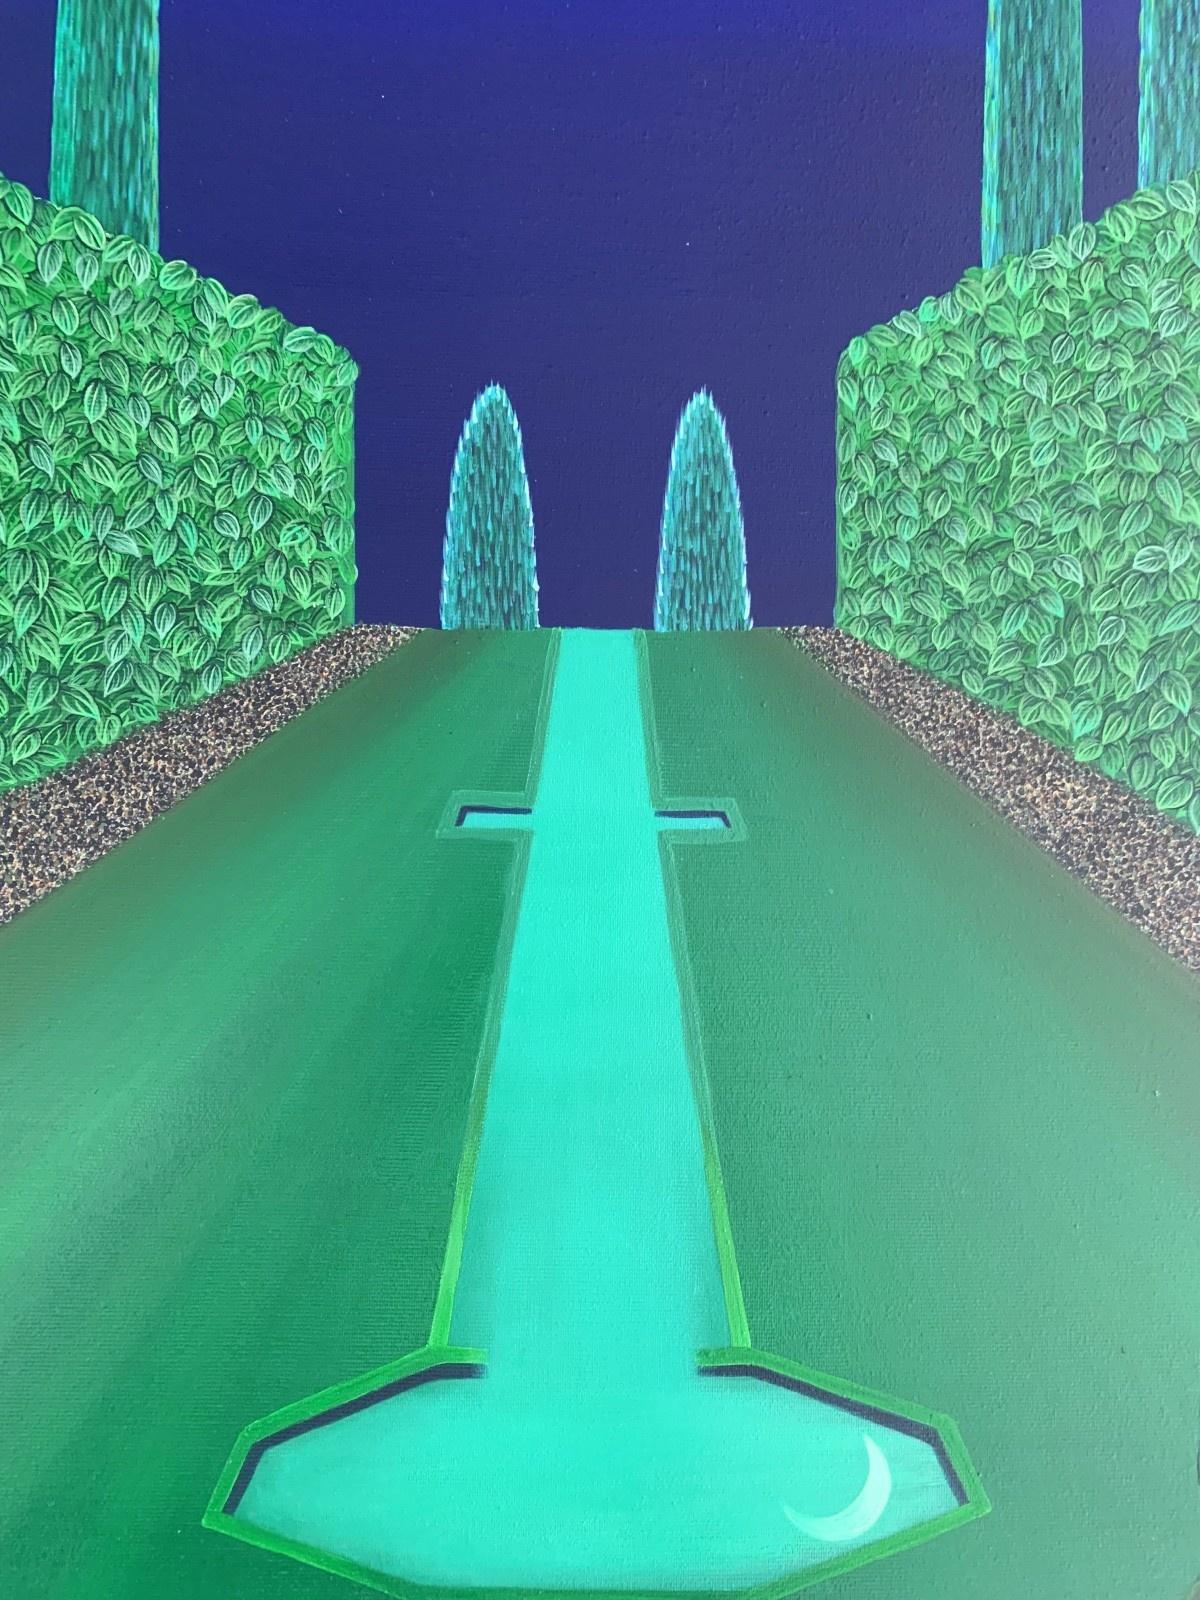 Himmelreicher Garten bei Nacht – Acrylmalerei, Pop-Art, lebhafte Farben, polnischer Künstler (Surrealismus), Painting, von Marta Rynkiewicz